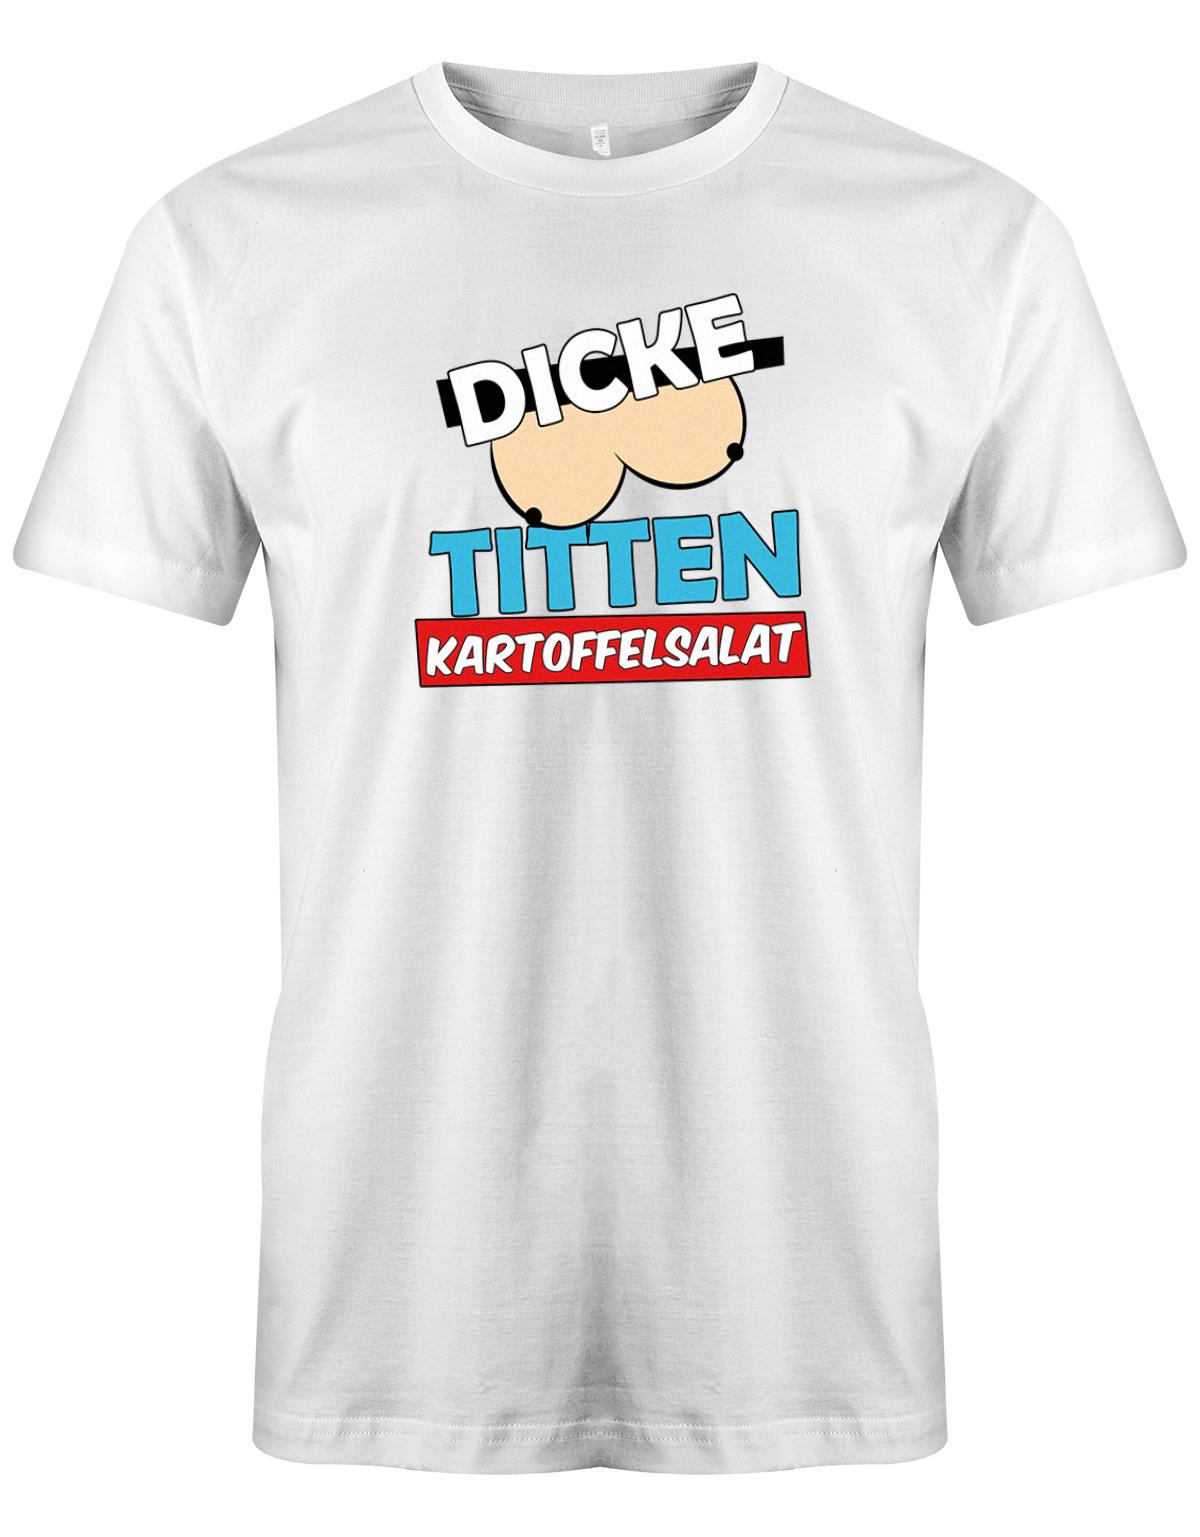 Dicke-Titten-Kartoffelsalat-Herren-Shirt-Weiss